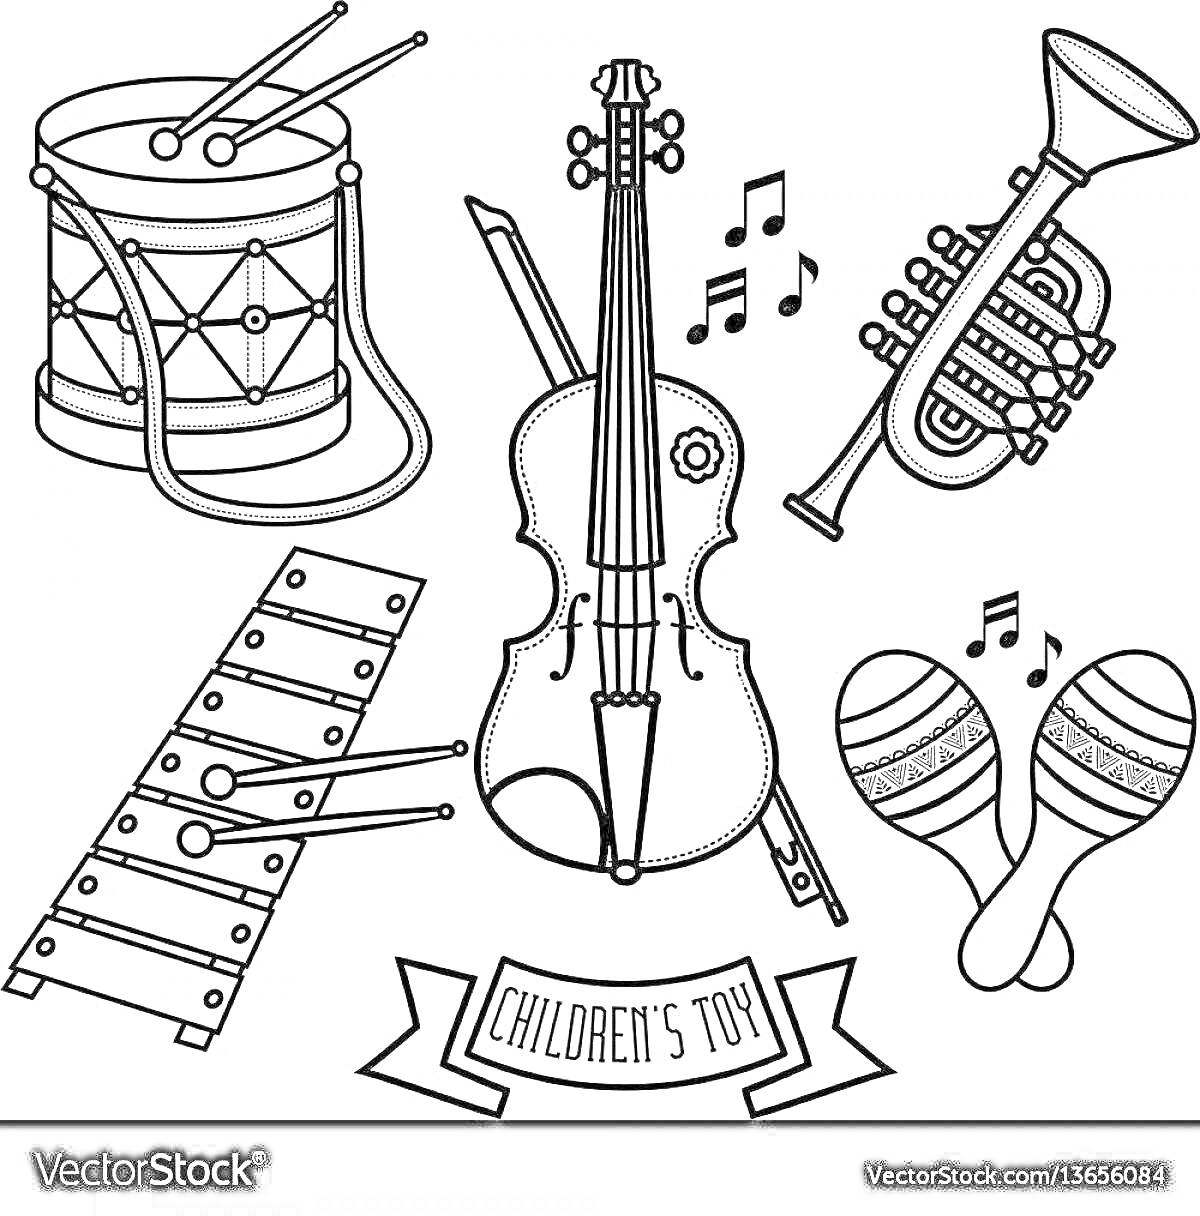 Раскраска Детские игрушечные музыкальные инструменты: барабан с палочками, скрипка с смычком, труба, ксилофон, маракасы